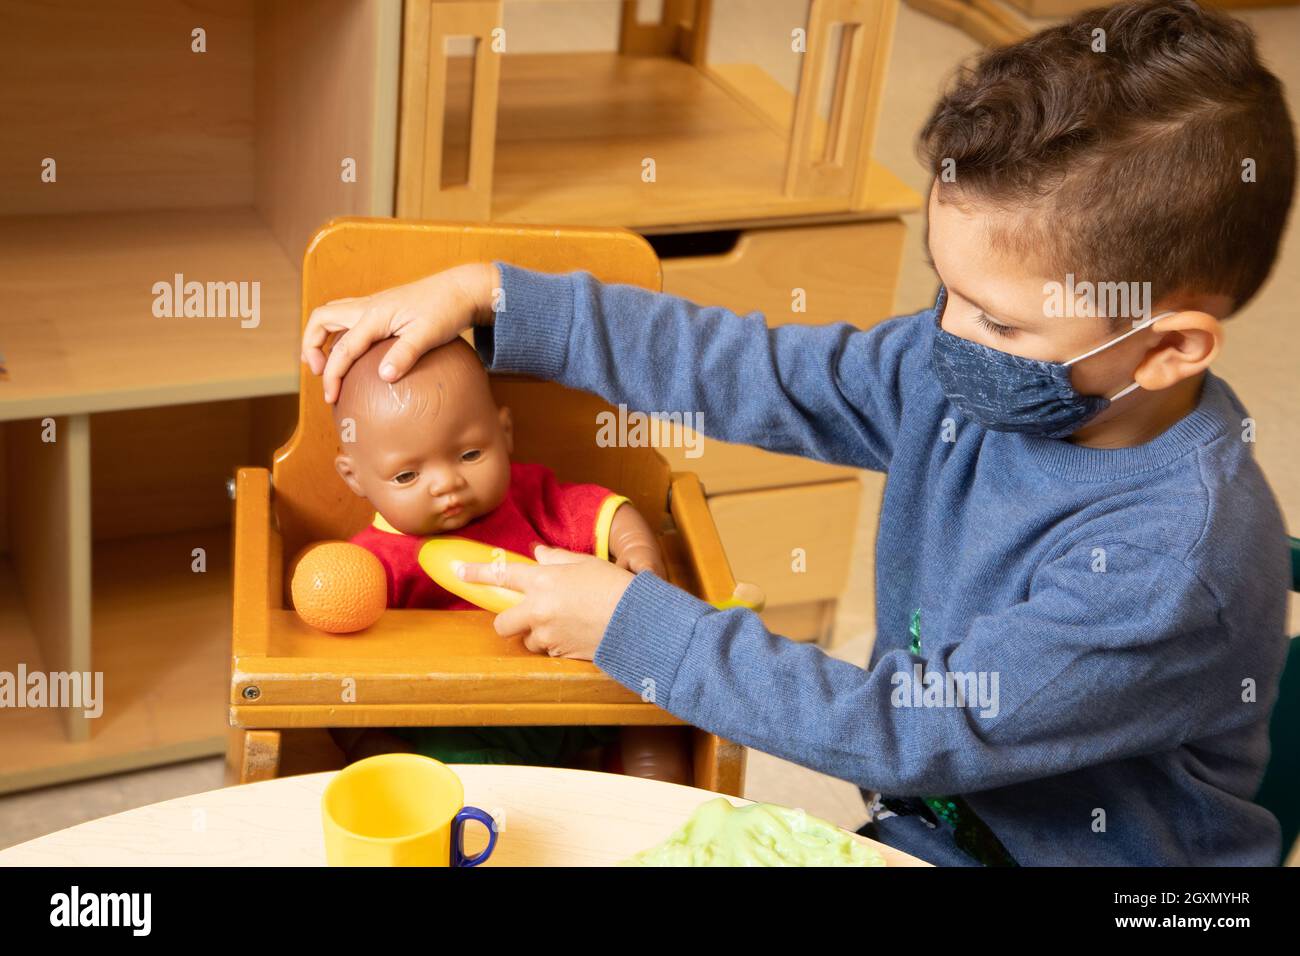 Educación Preescolar Los niños de 3-4 años fingen jugar en el área familiar, el niño alimentando la muñeca con el alimento del juego, usando la máscara de la cara para proteger contra Covid-19 Foto de stock